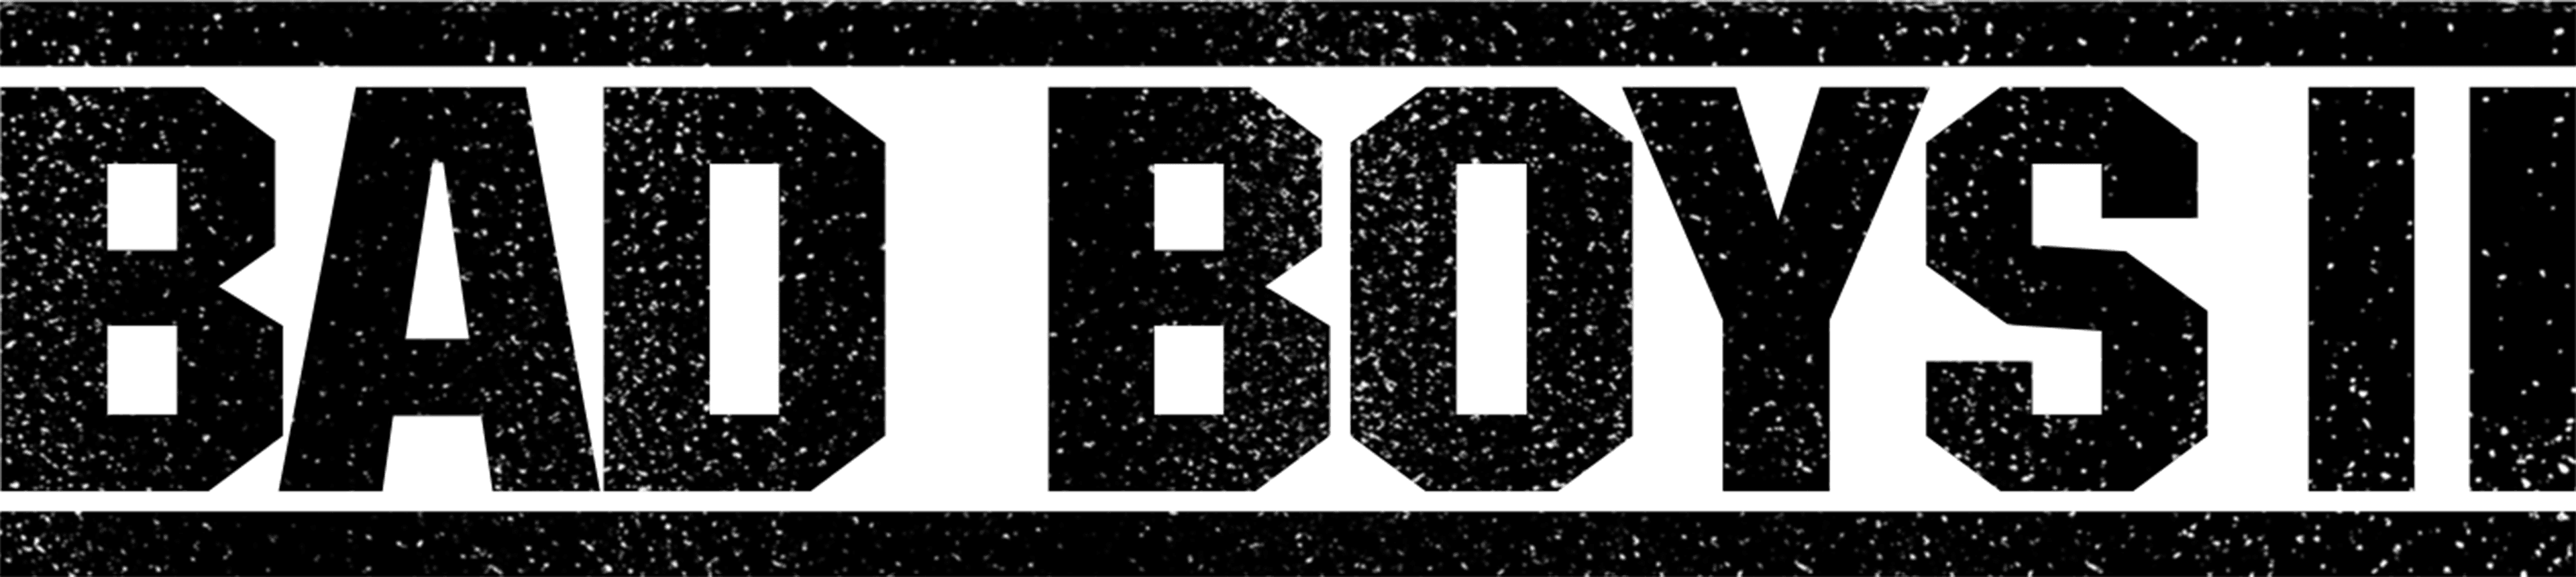 Bad Boys II logo